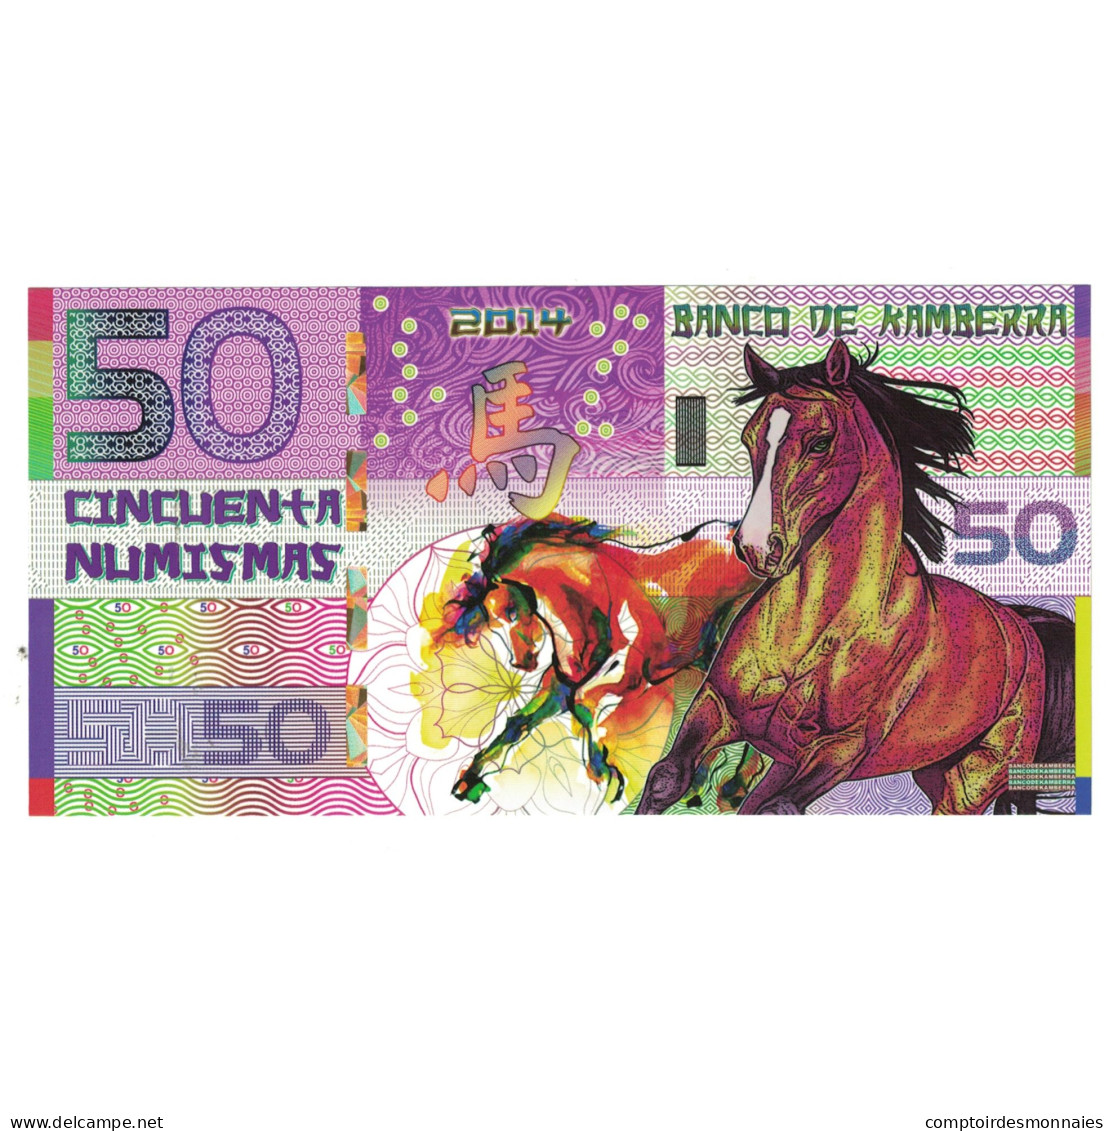 Billet, Australie, Billet Touristique, 2014, 50 Dollars ,Colorful Plastic - Vals En Specimen